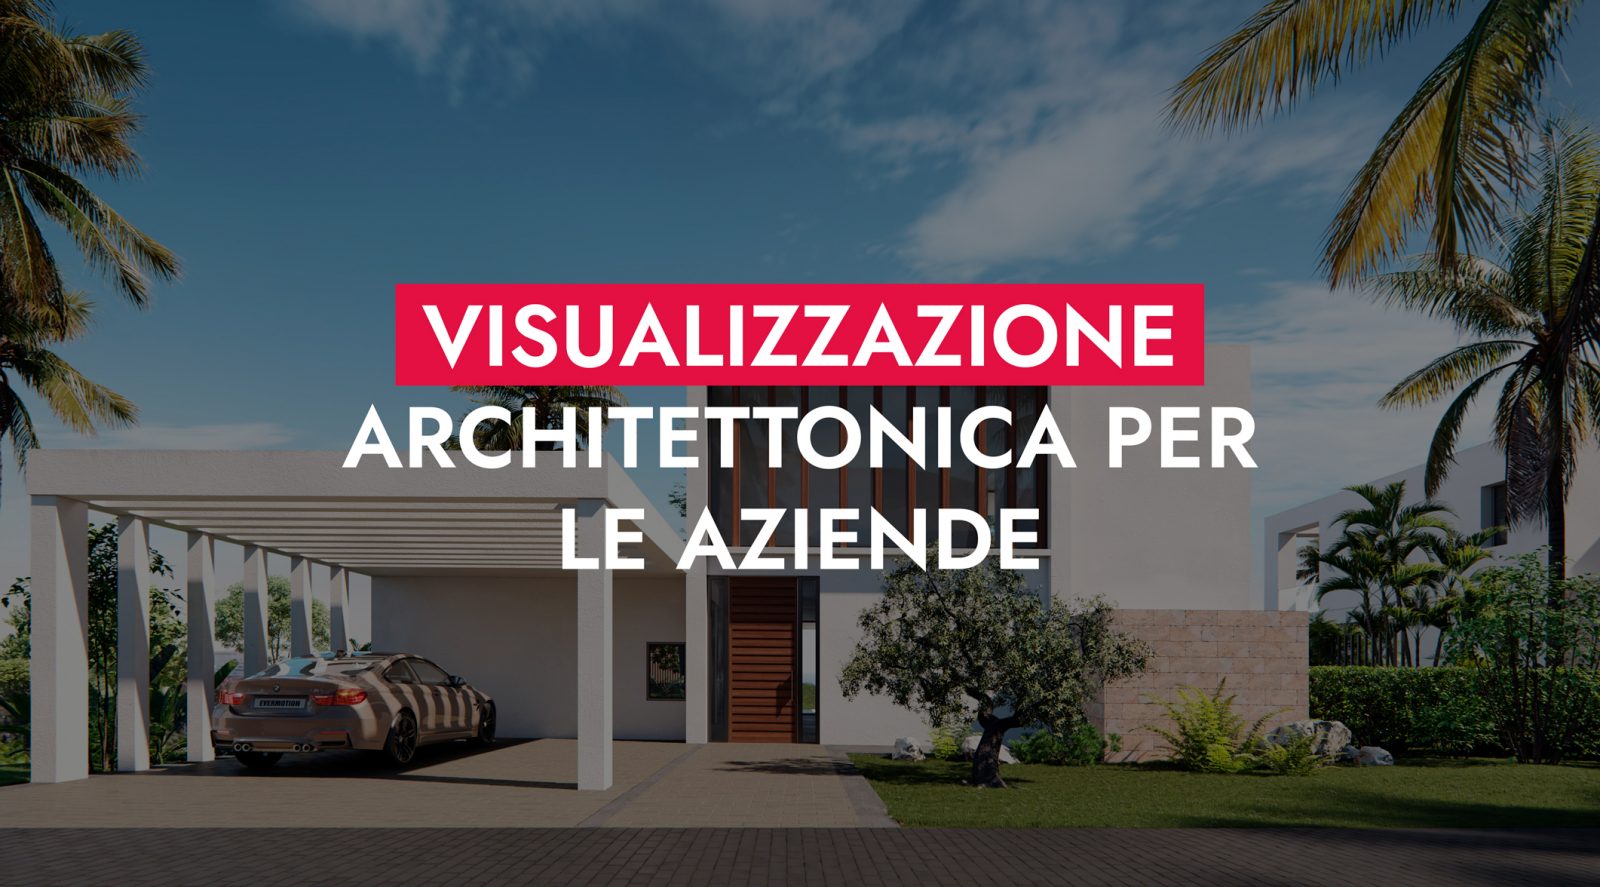 Visualizzazione Architettonica Per Le Aziende